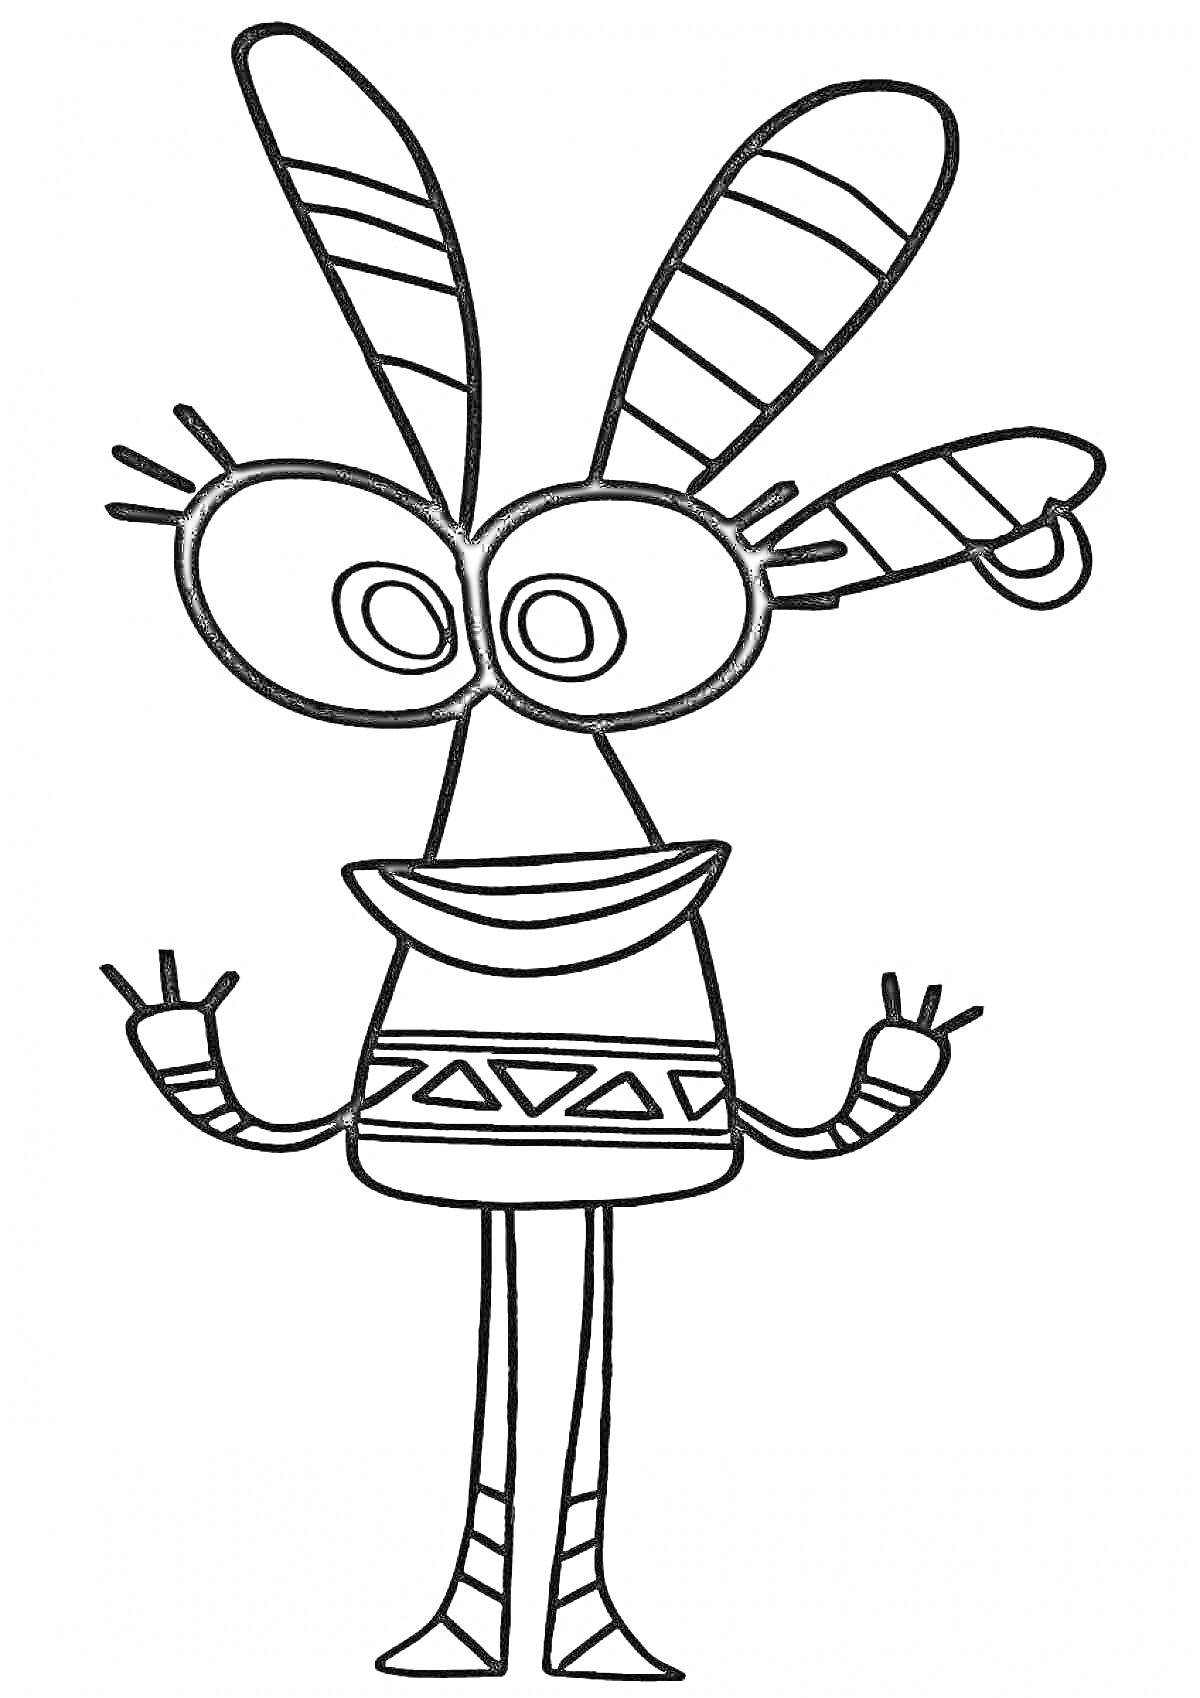 Раскраска Куми куми с большими глазами, длинными ушами и узорами на одежде